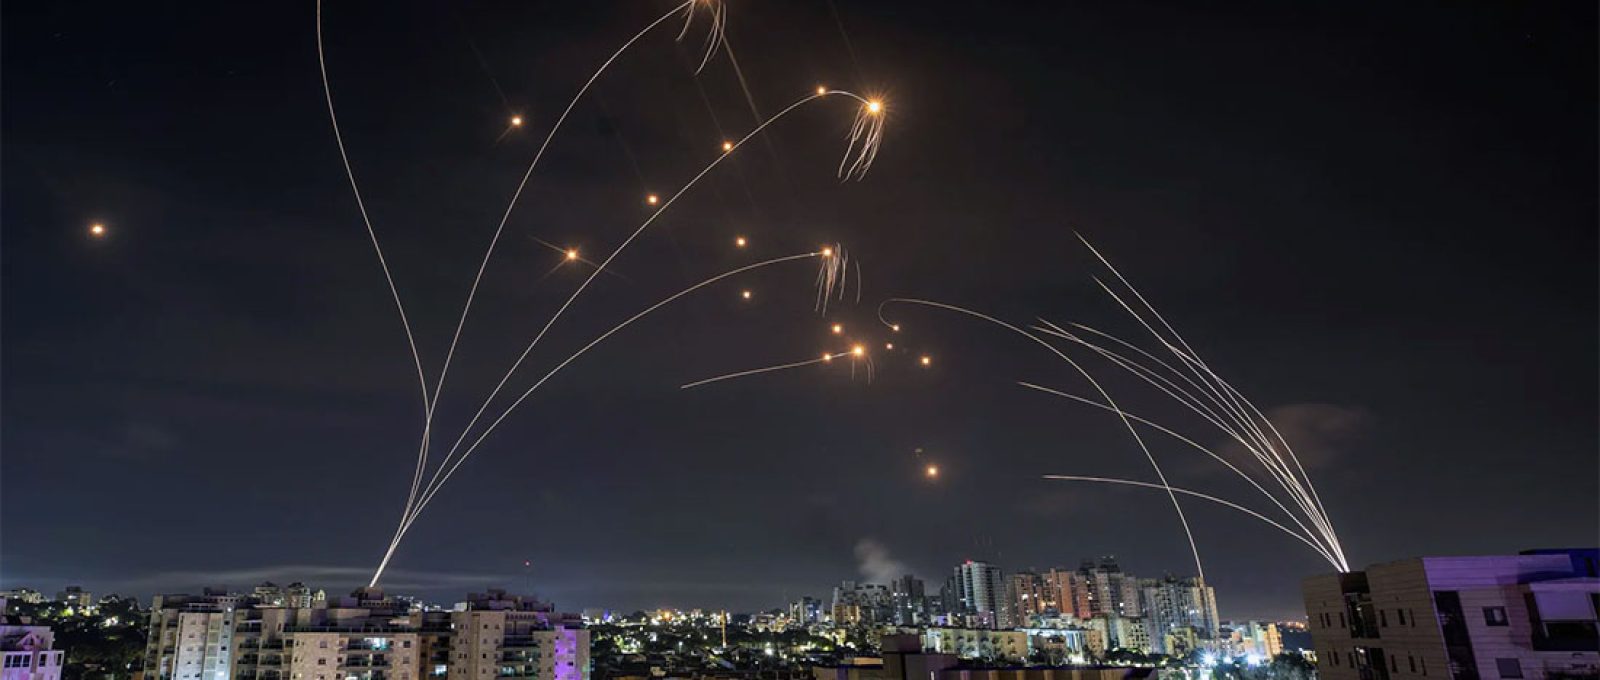 O sistema de defesa antimísseis Iron Dome de Israel intercepta foguetes lançados da Faixa de Gaza no domingo; o sistema pareceu sobrecarregado no início do ataque (Amir Cohen/Reuters).